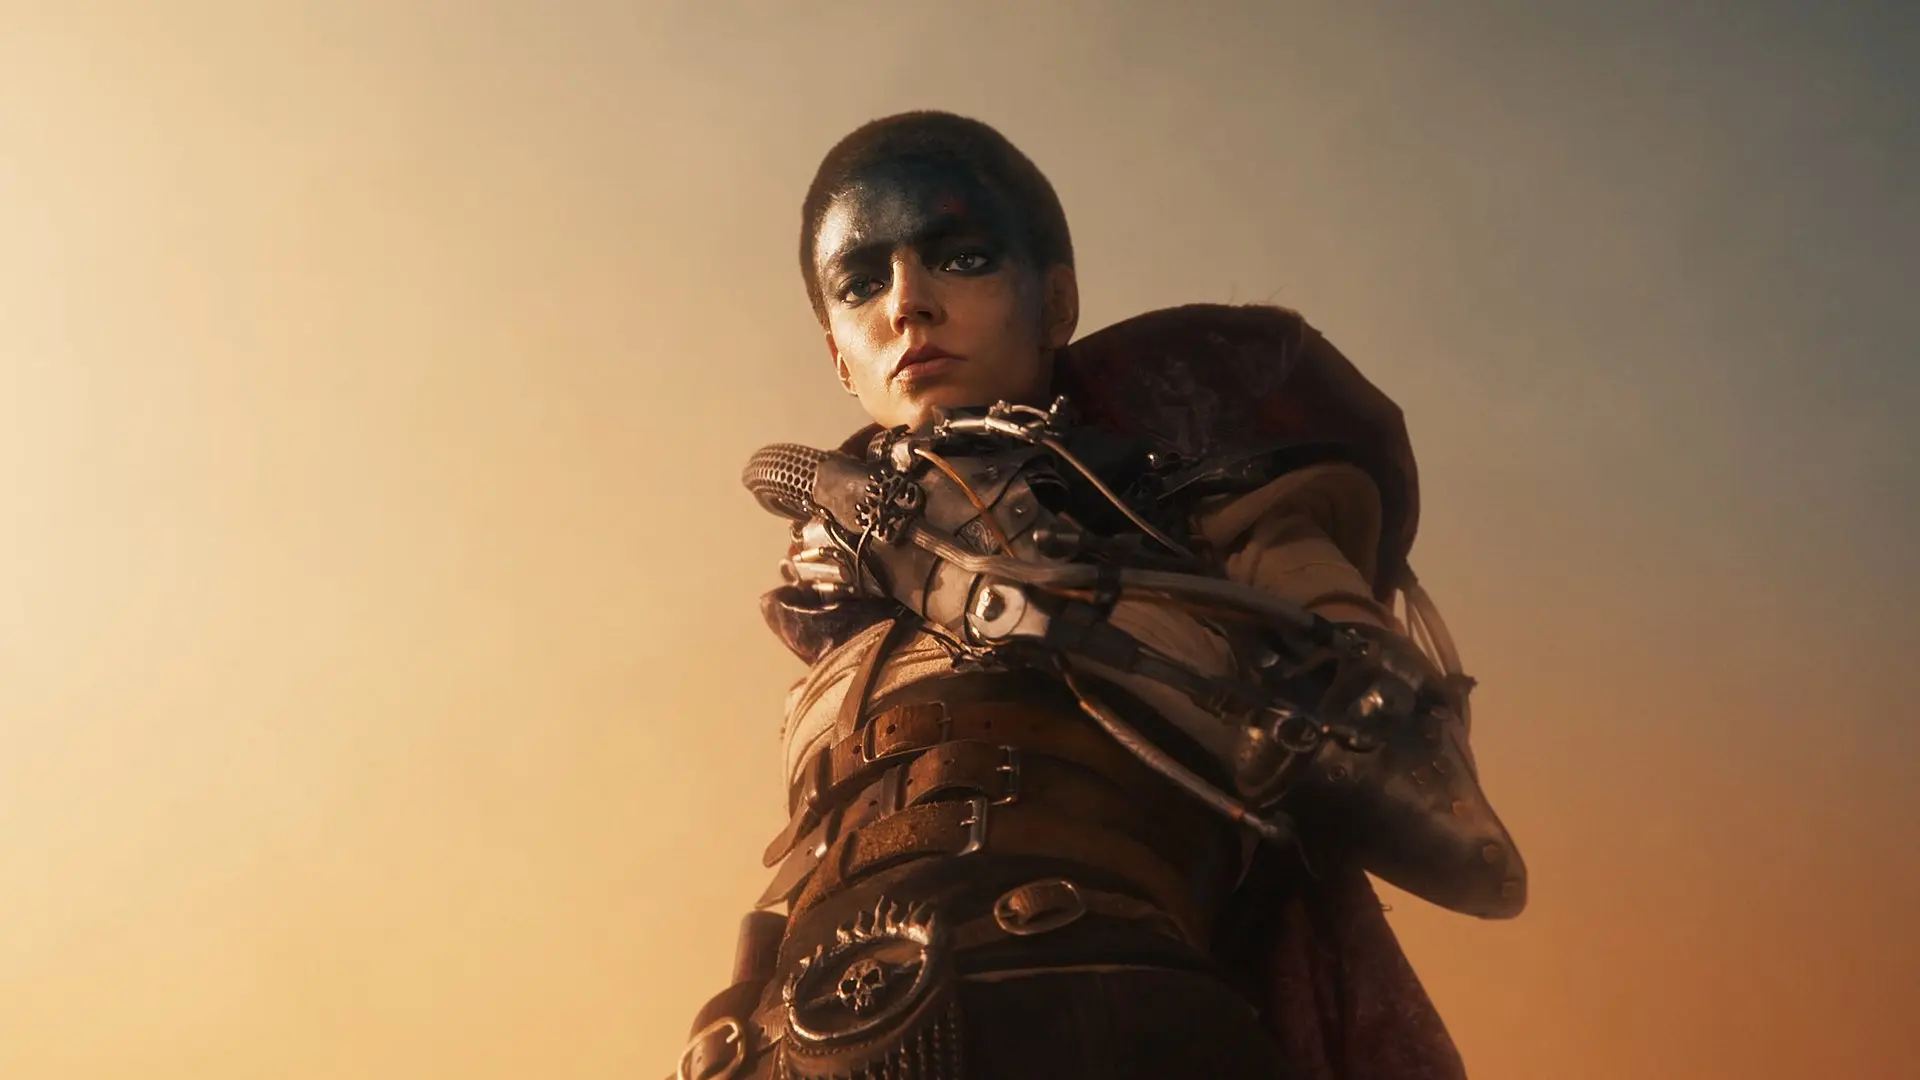 آنیا تیلور جوی در نقش ایمپریتر فیوریوسا با ظاهر نهایی در فیلم Furiosa: A Mad Max Saga انتشار نسخه با کیفیت فیلم Furiosa از دنیای مکس دیوانه ایتی مایتی